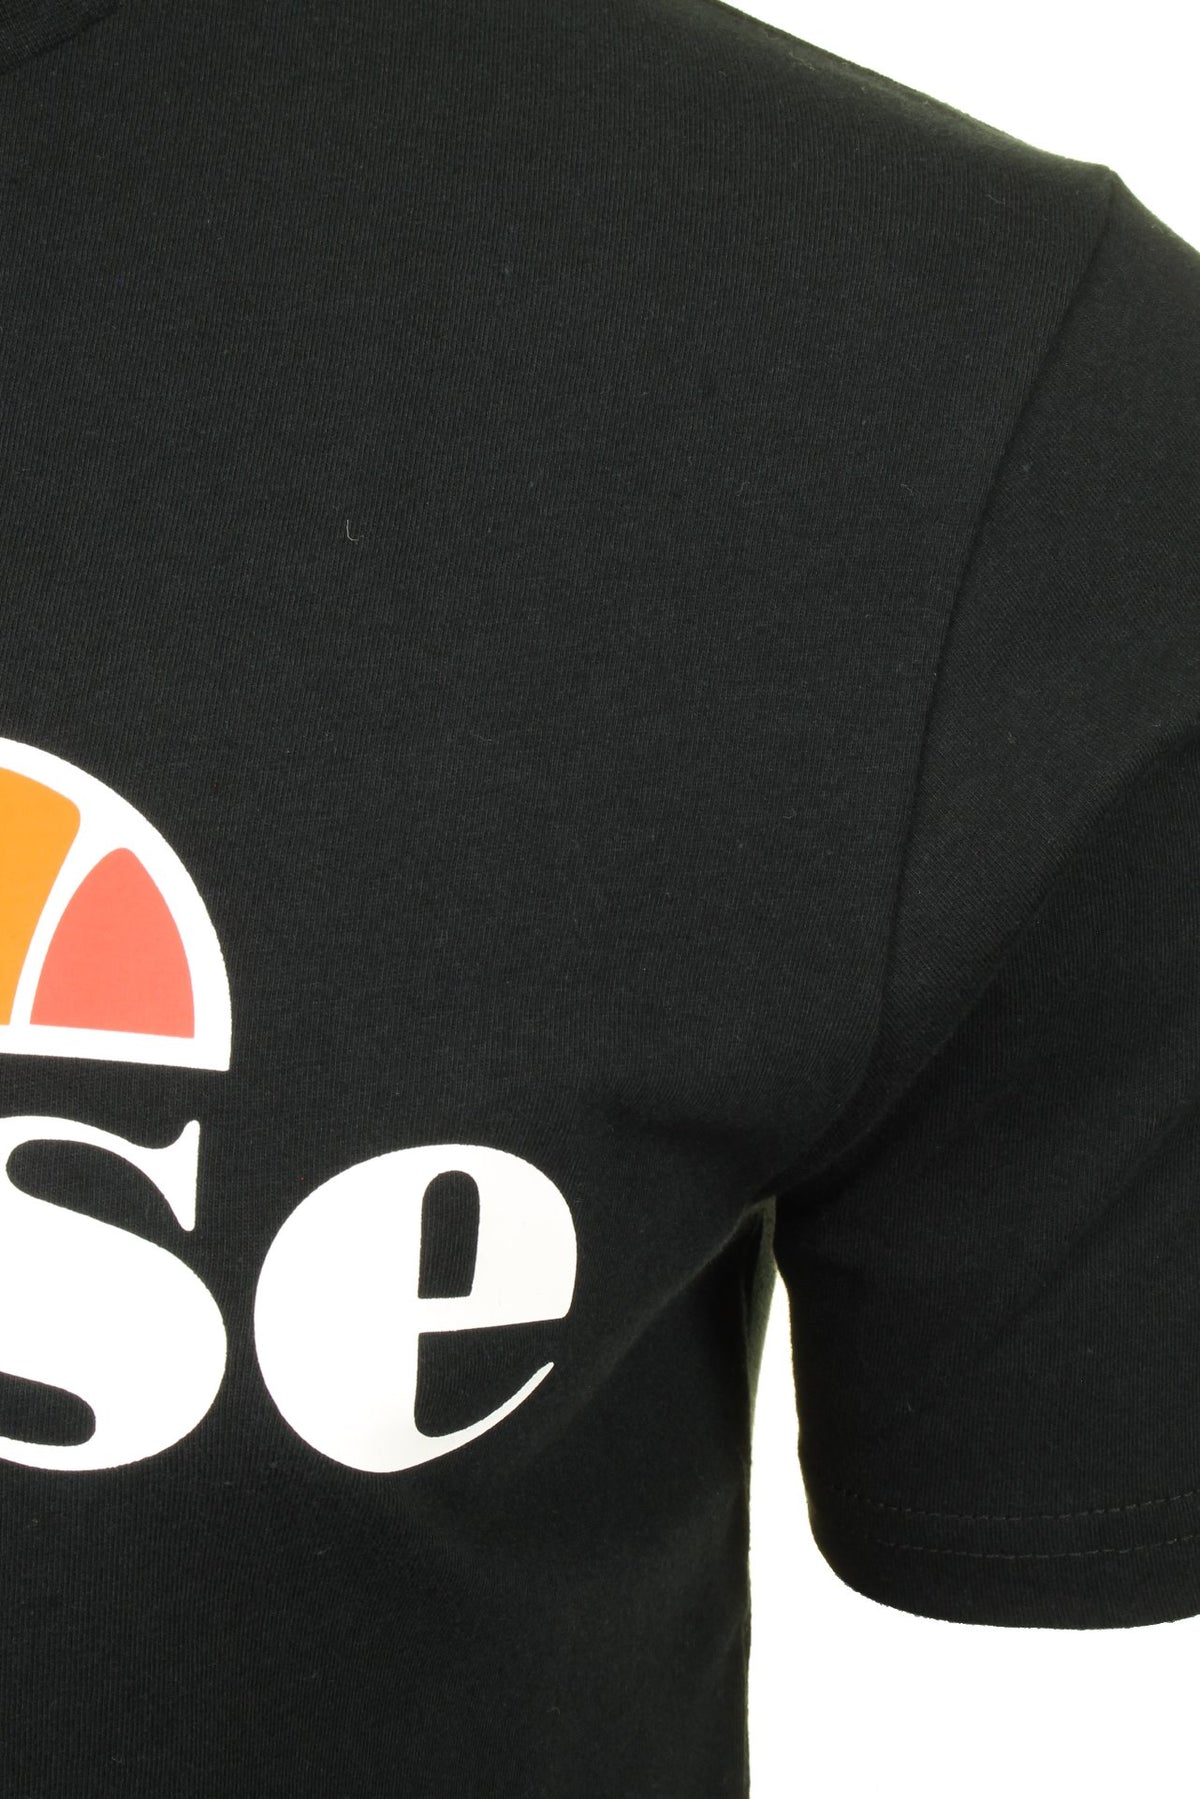 Ellesse Mens Logo Front Crew Neck T-Shirt 'PRADO' - Short Sleeved, 02, Shc07405, Black